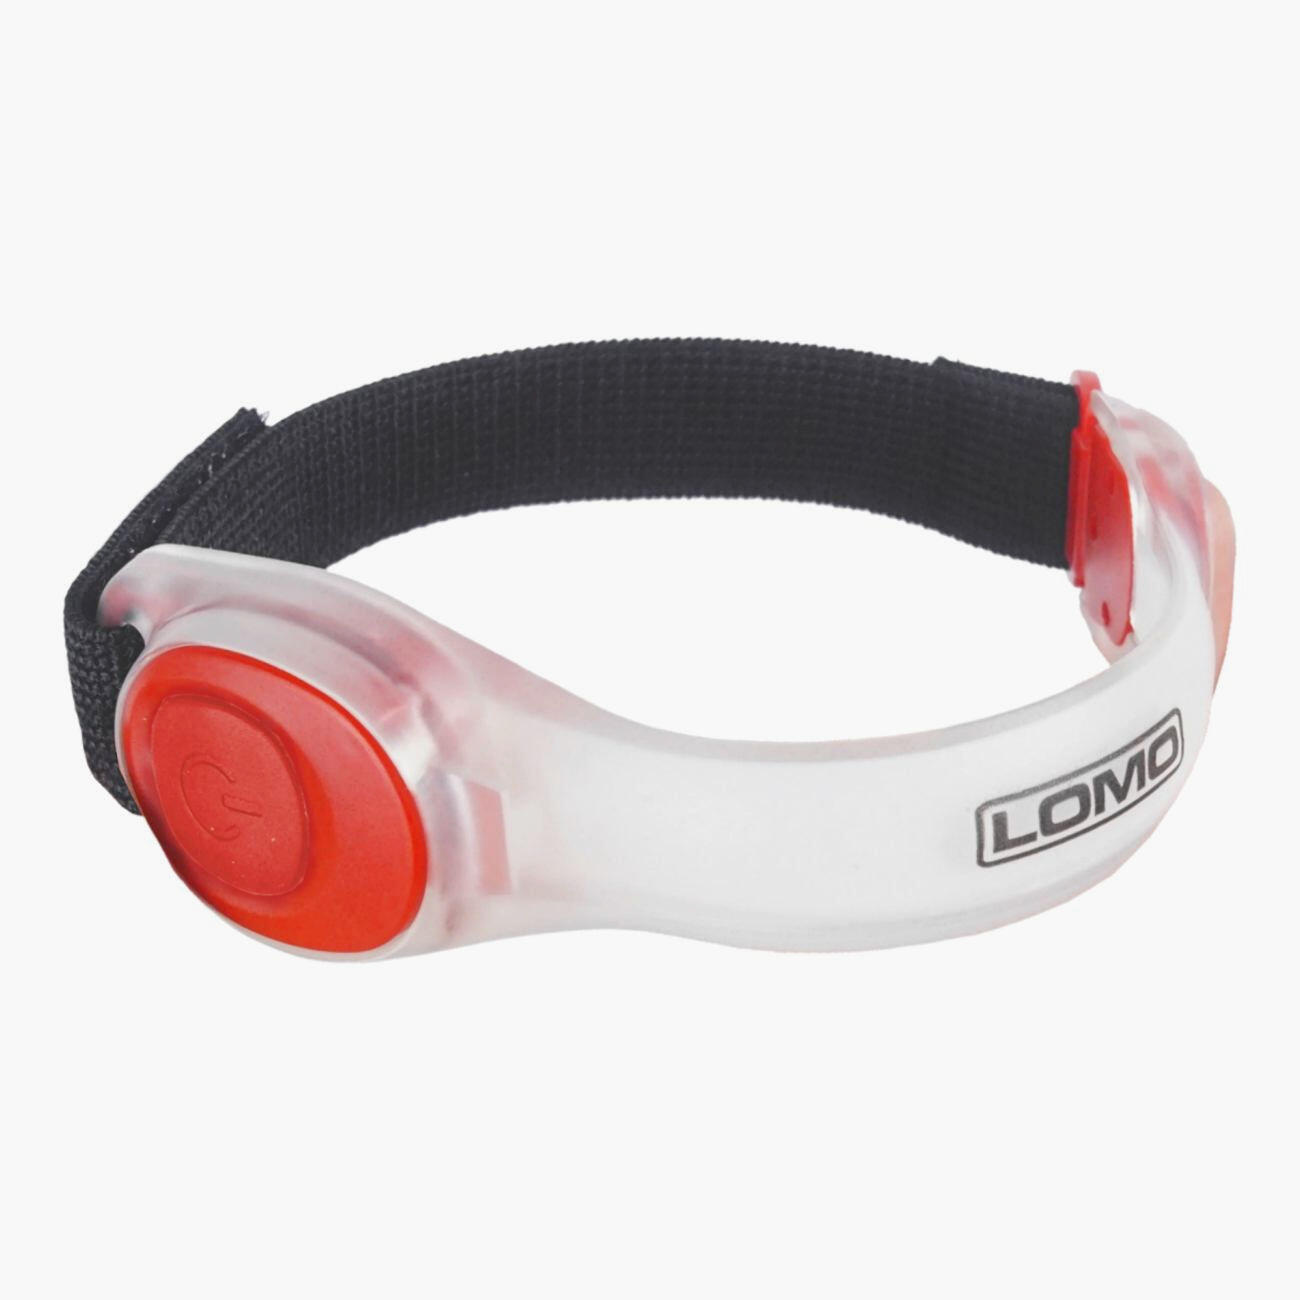 LOMO Lomo LED Running Armband